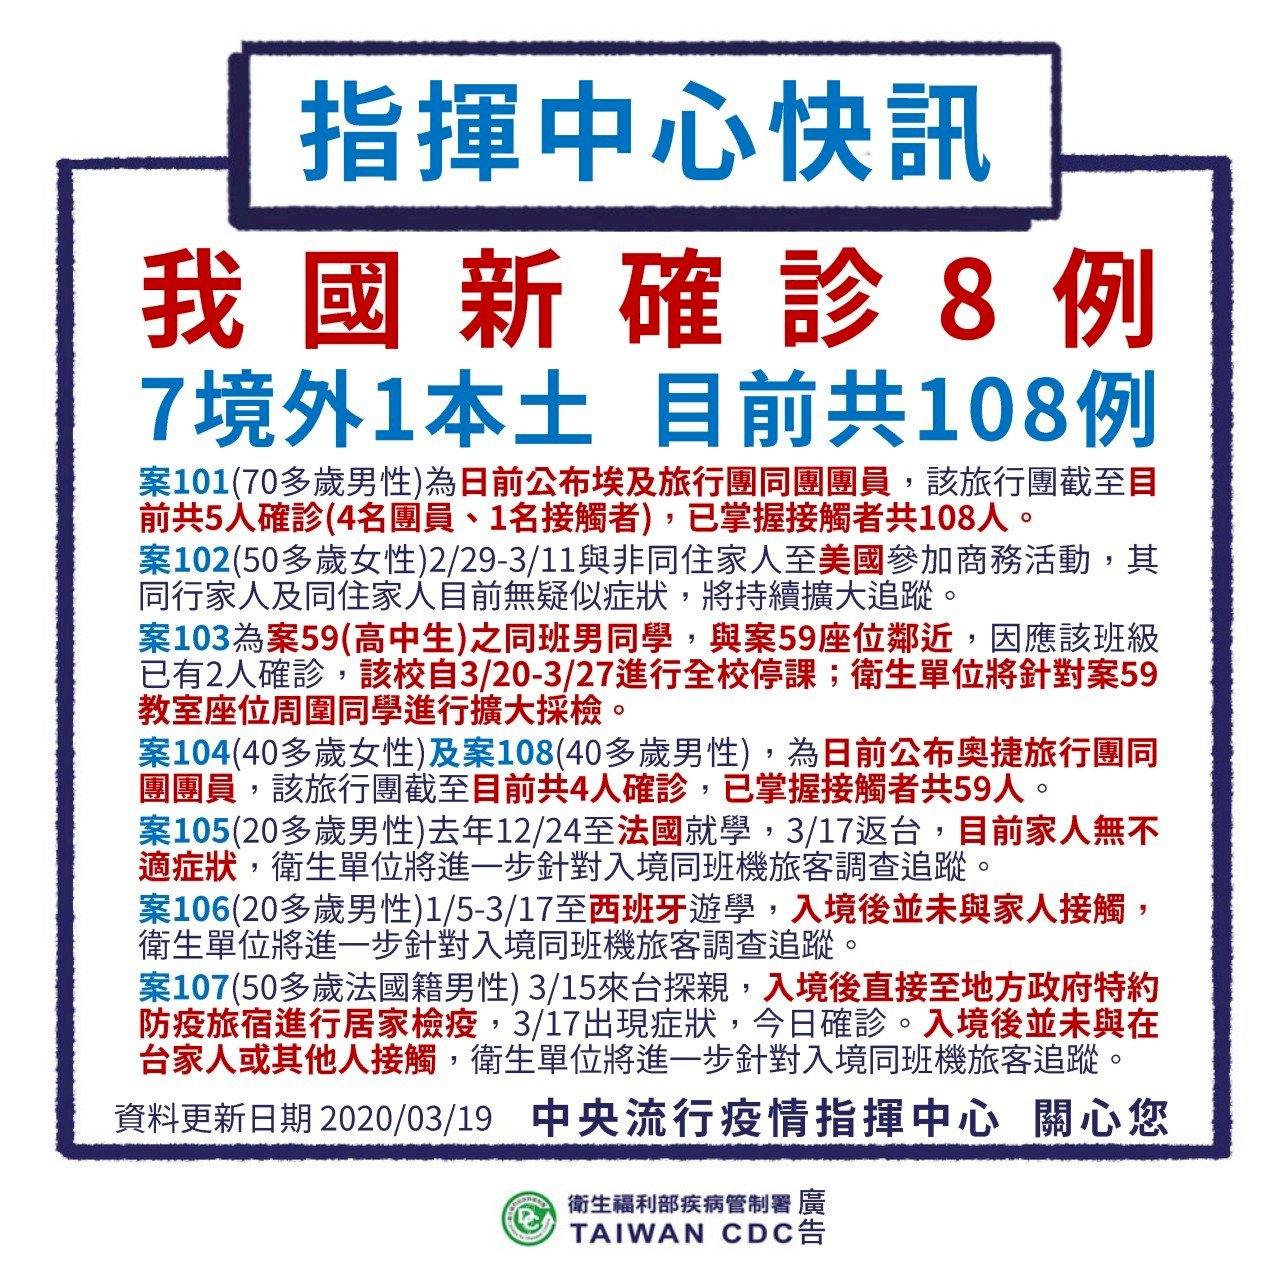 Trung tâm Chỉ đạo phòng chống dịch bệnh công bố Đài Loan thêm 8 ca nhiễm Covid 19, trong đó 7 ca bị lây nhiễm ở nước ngoài, 1 ca bị lây nhiễm trong nước